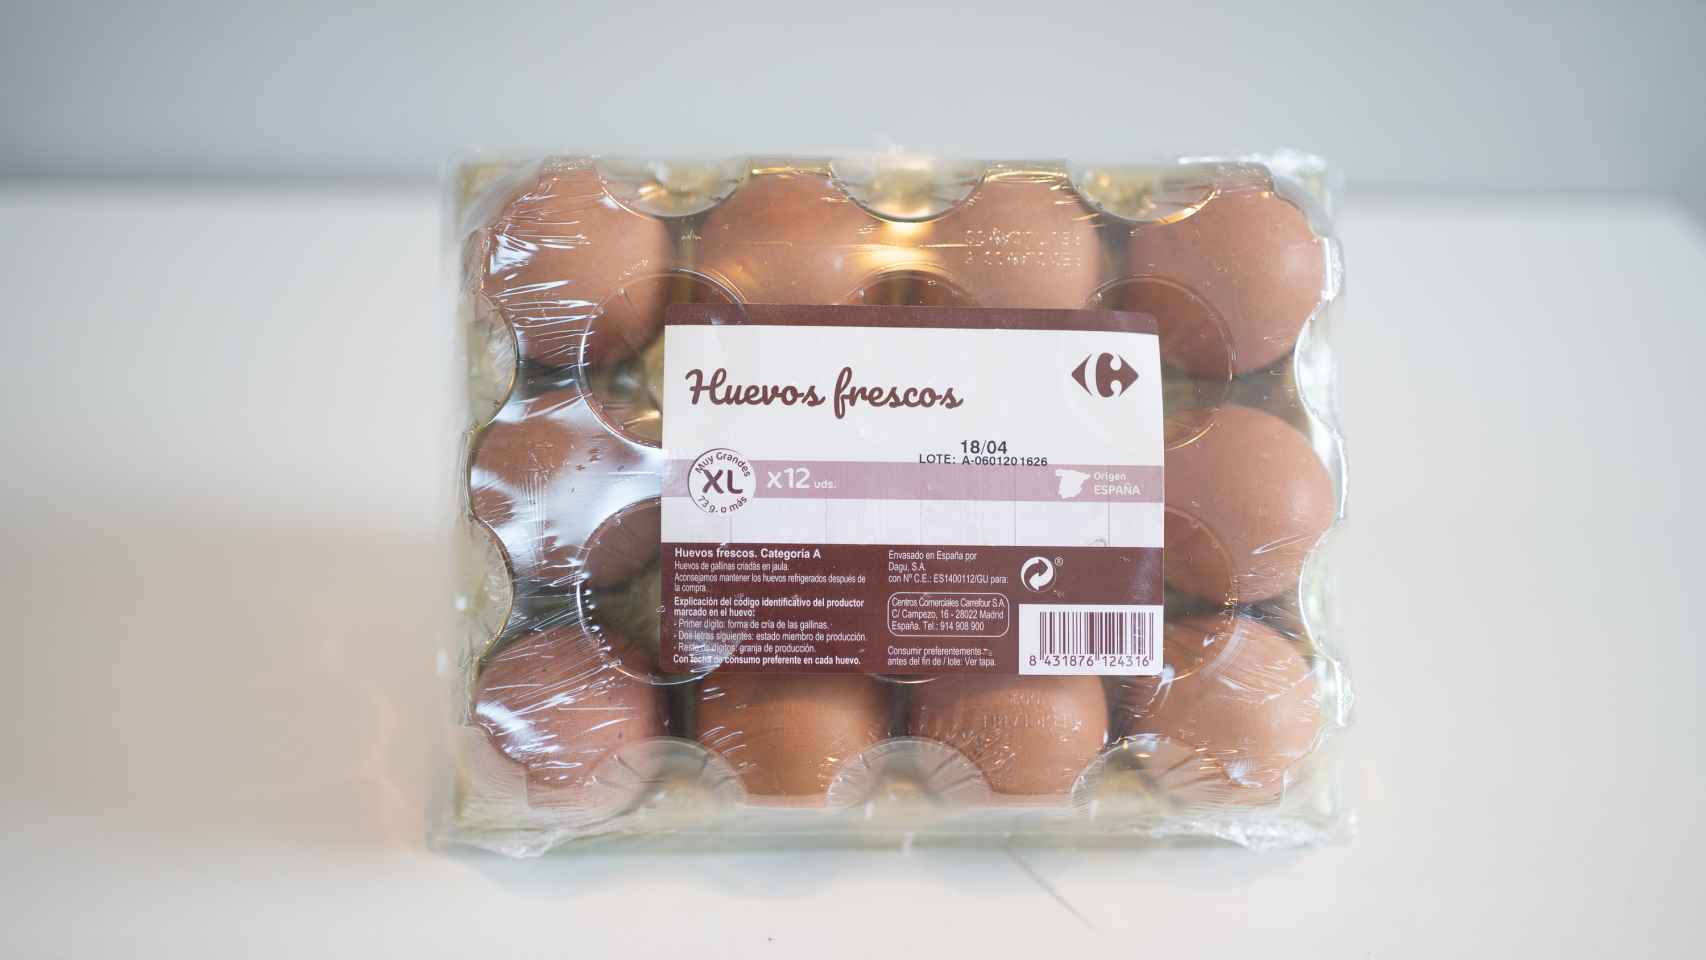 El paquete de doce huevos de Carrefour.